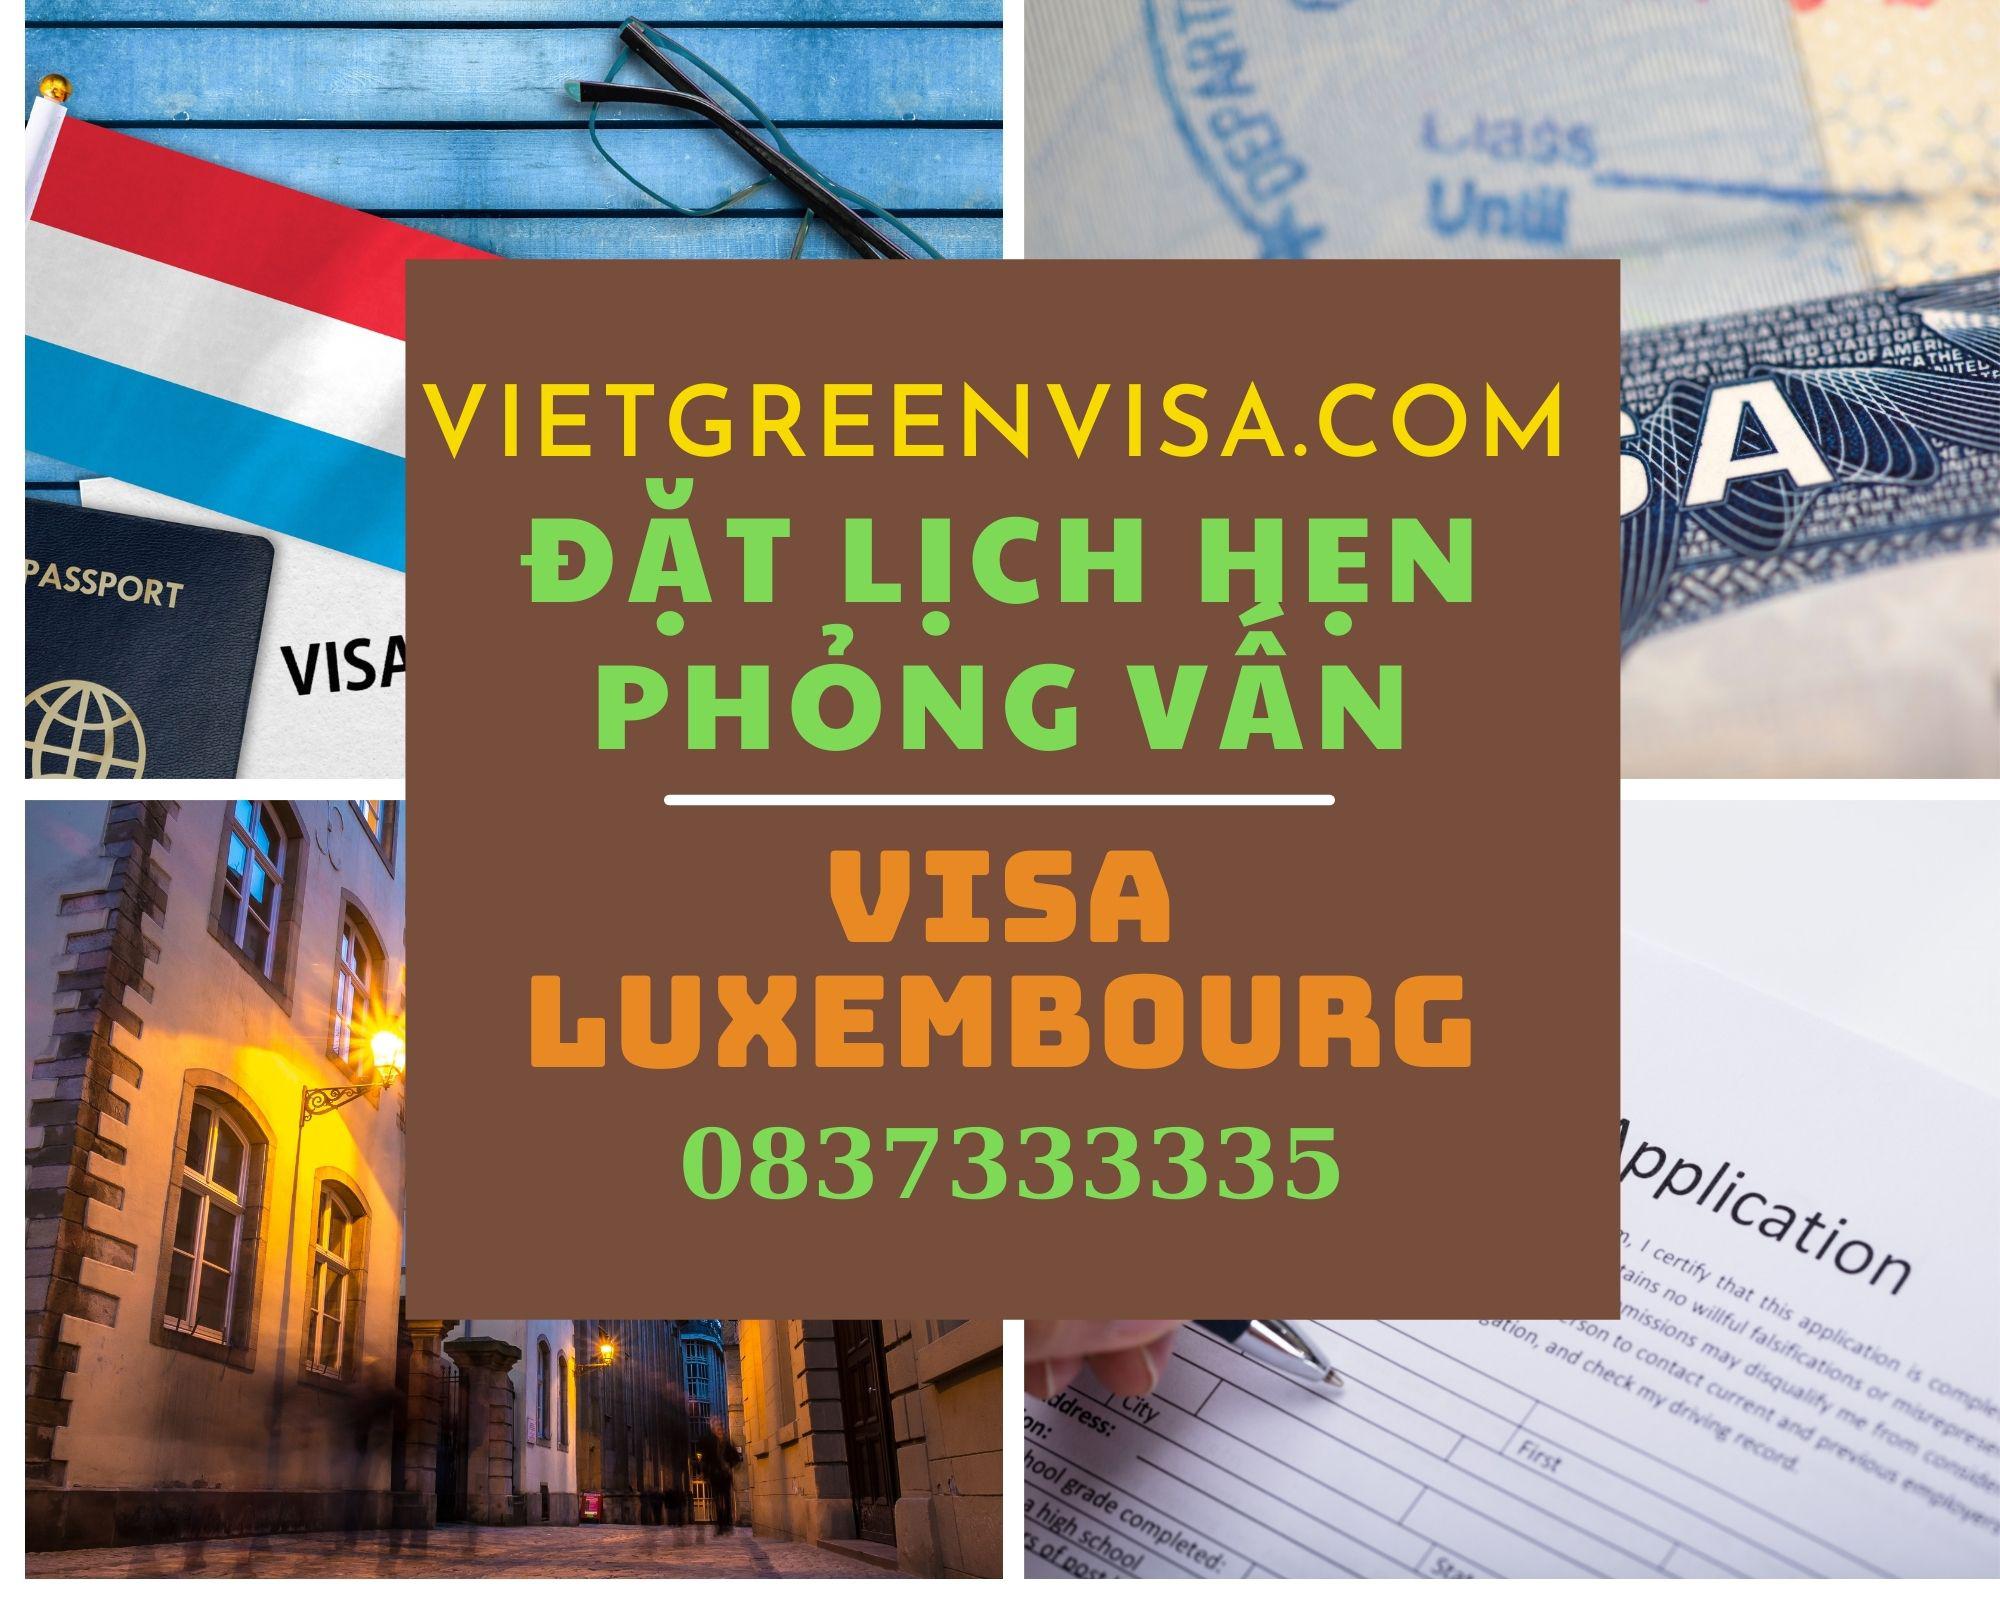 Dịch vụ đặt lịch hẹn phỏng vấn visa Luxembourg nhanh chóng